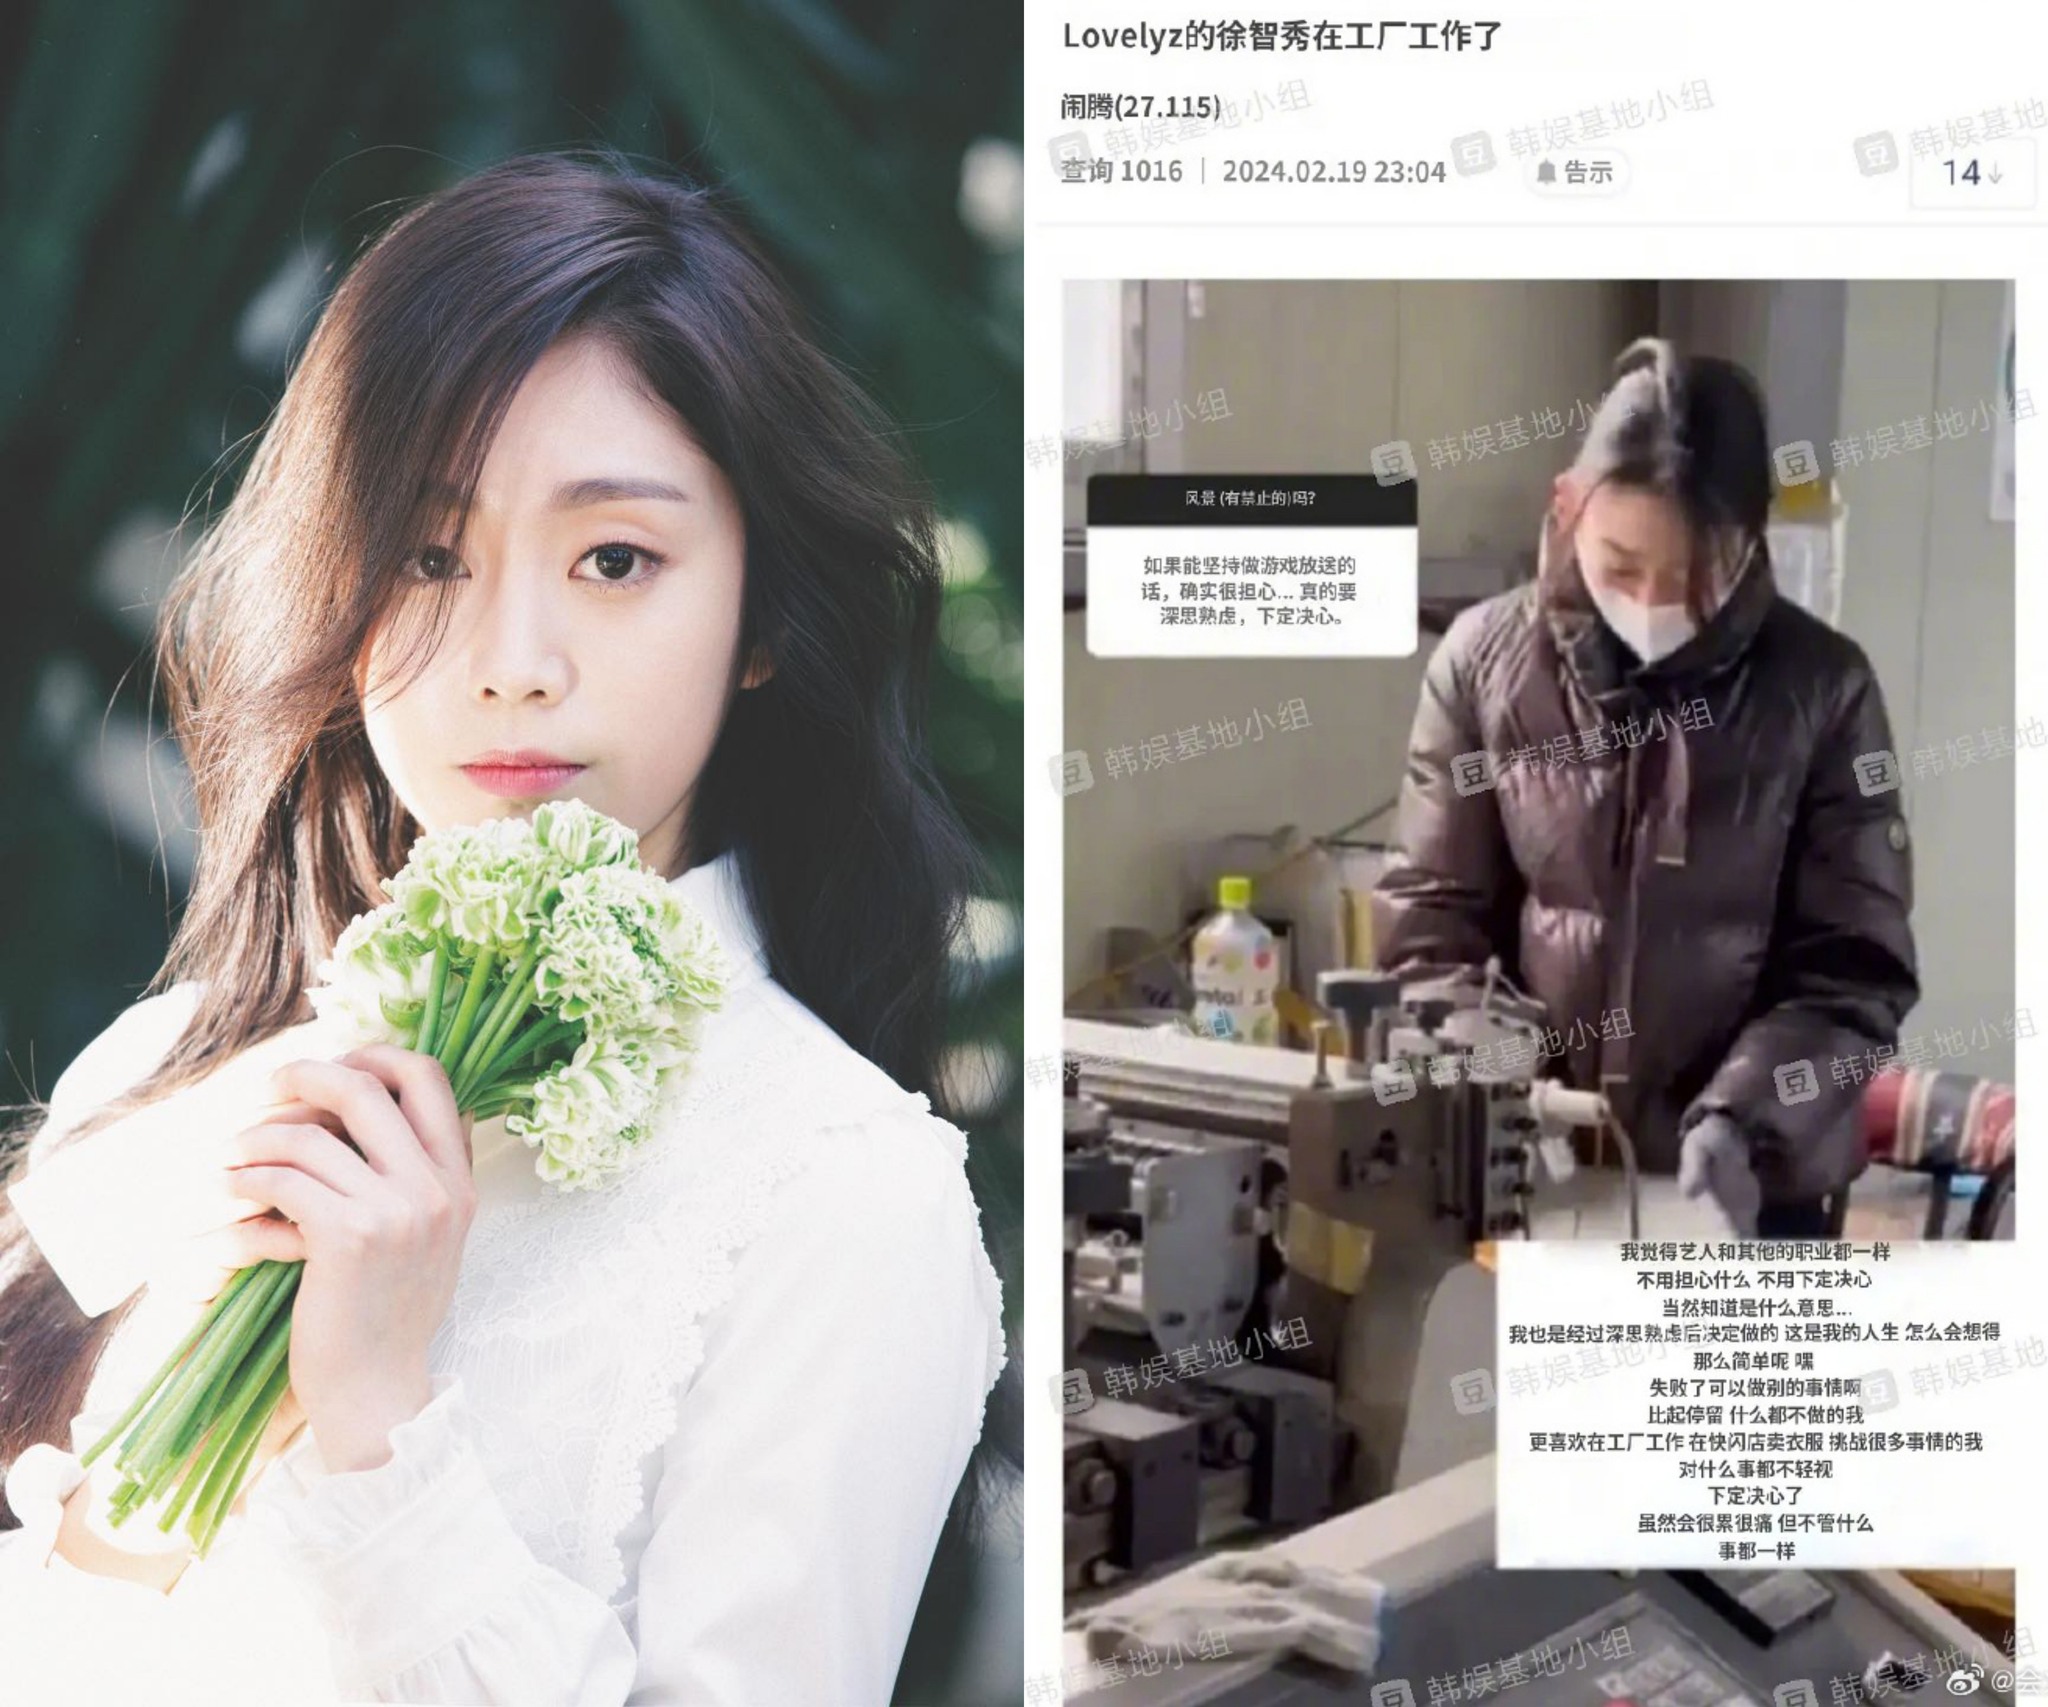 hình ảnh nữ idol làm công nhân tại một nhà máy sau khi cô nàng kết thúc hợp đồng cùng Lovelyz.